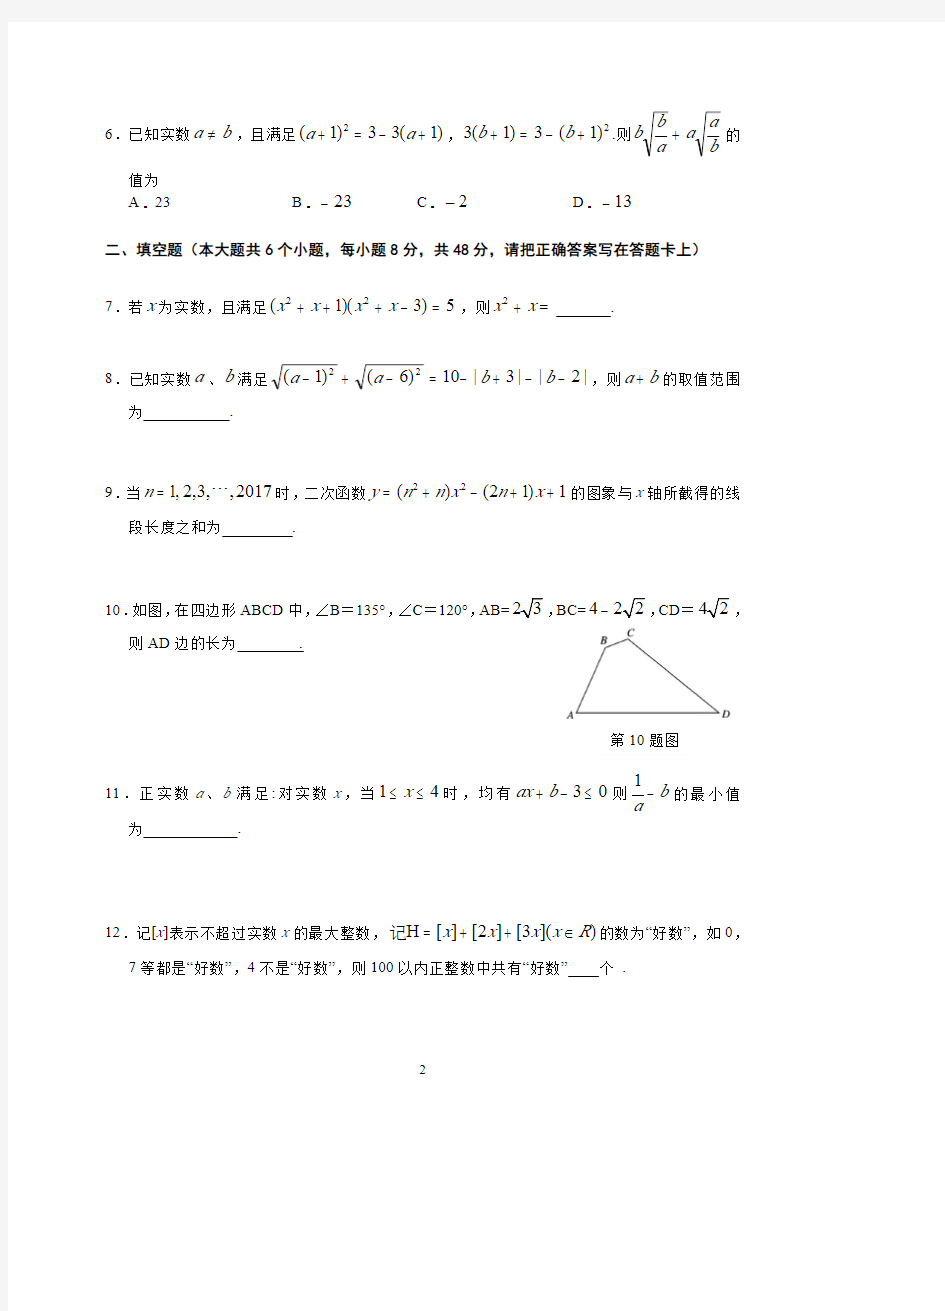 芜湖一中 2017年高一自主招生考试数学试卷及答案